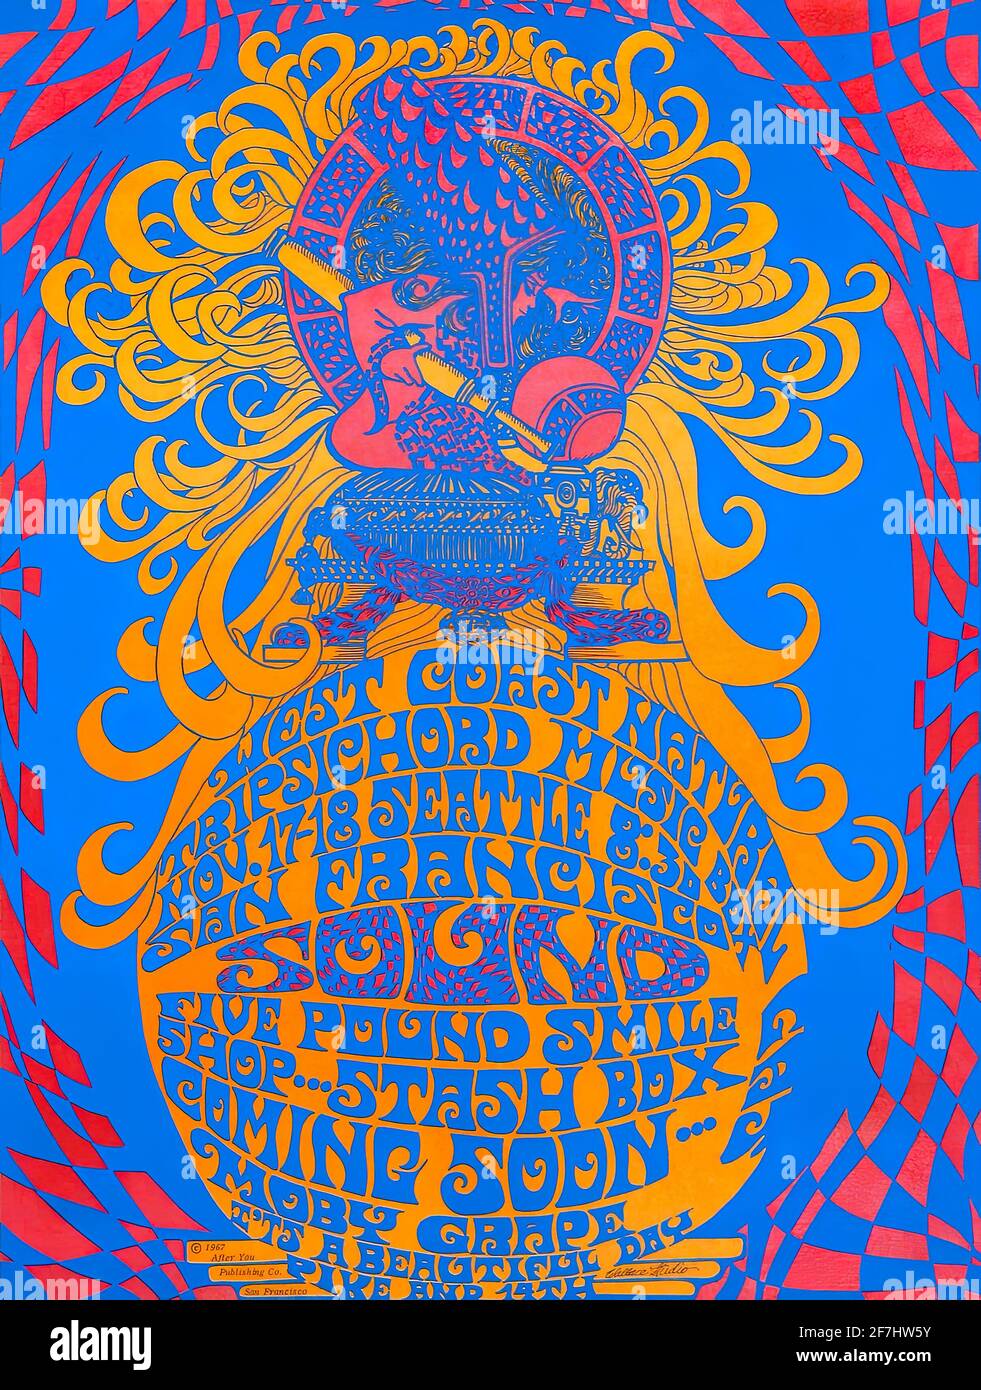 Ein Vintage-Plakat für psychedelische Musik für die West Coast Natural Tripsichord Music Box Festival in San Francisco Stockfoto